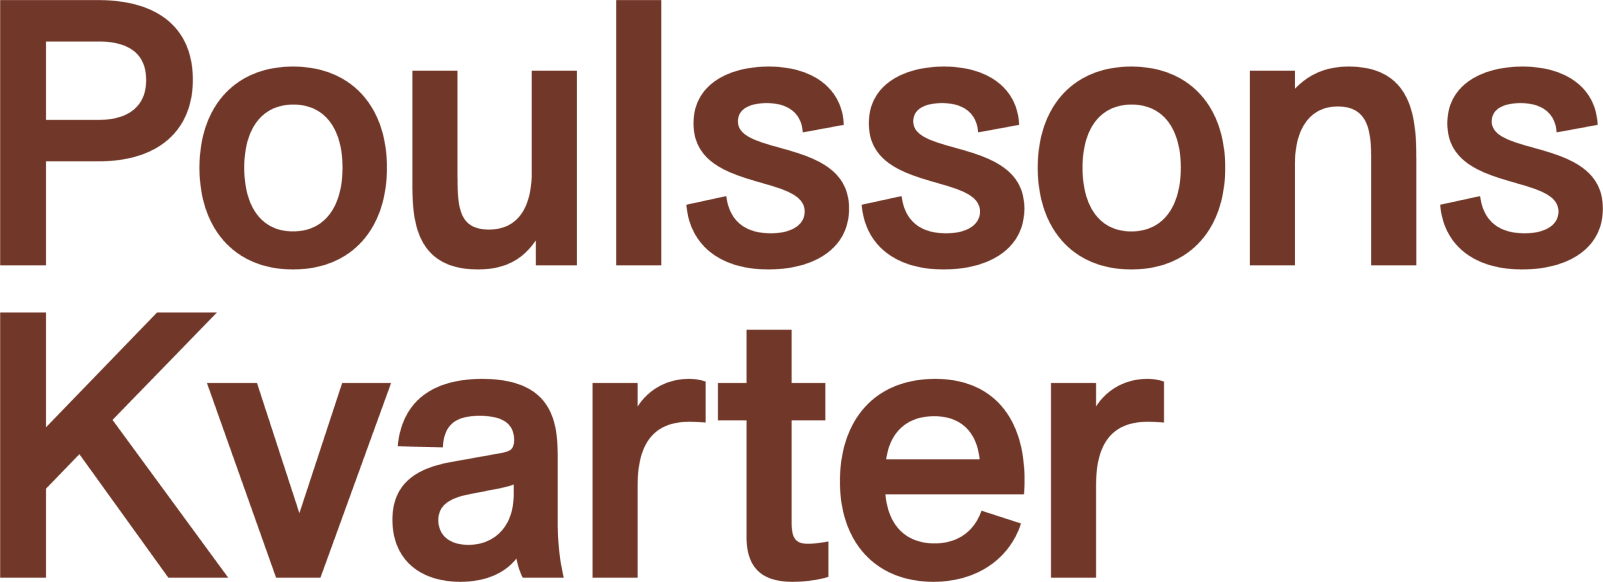 Logoen for Poulssons Kvarter.